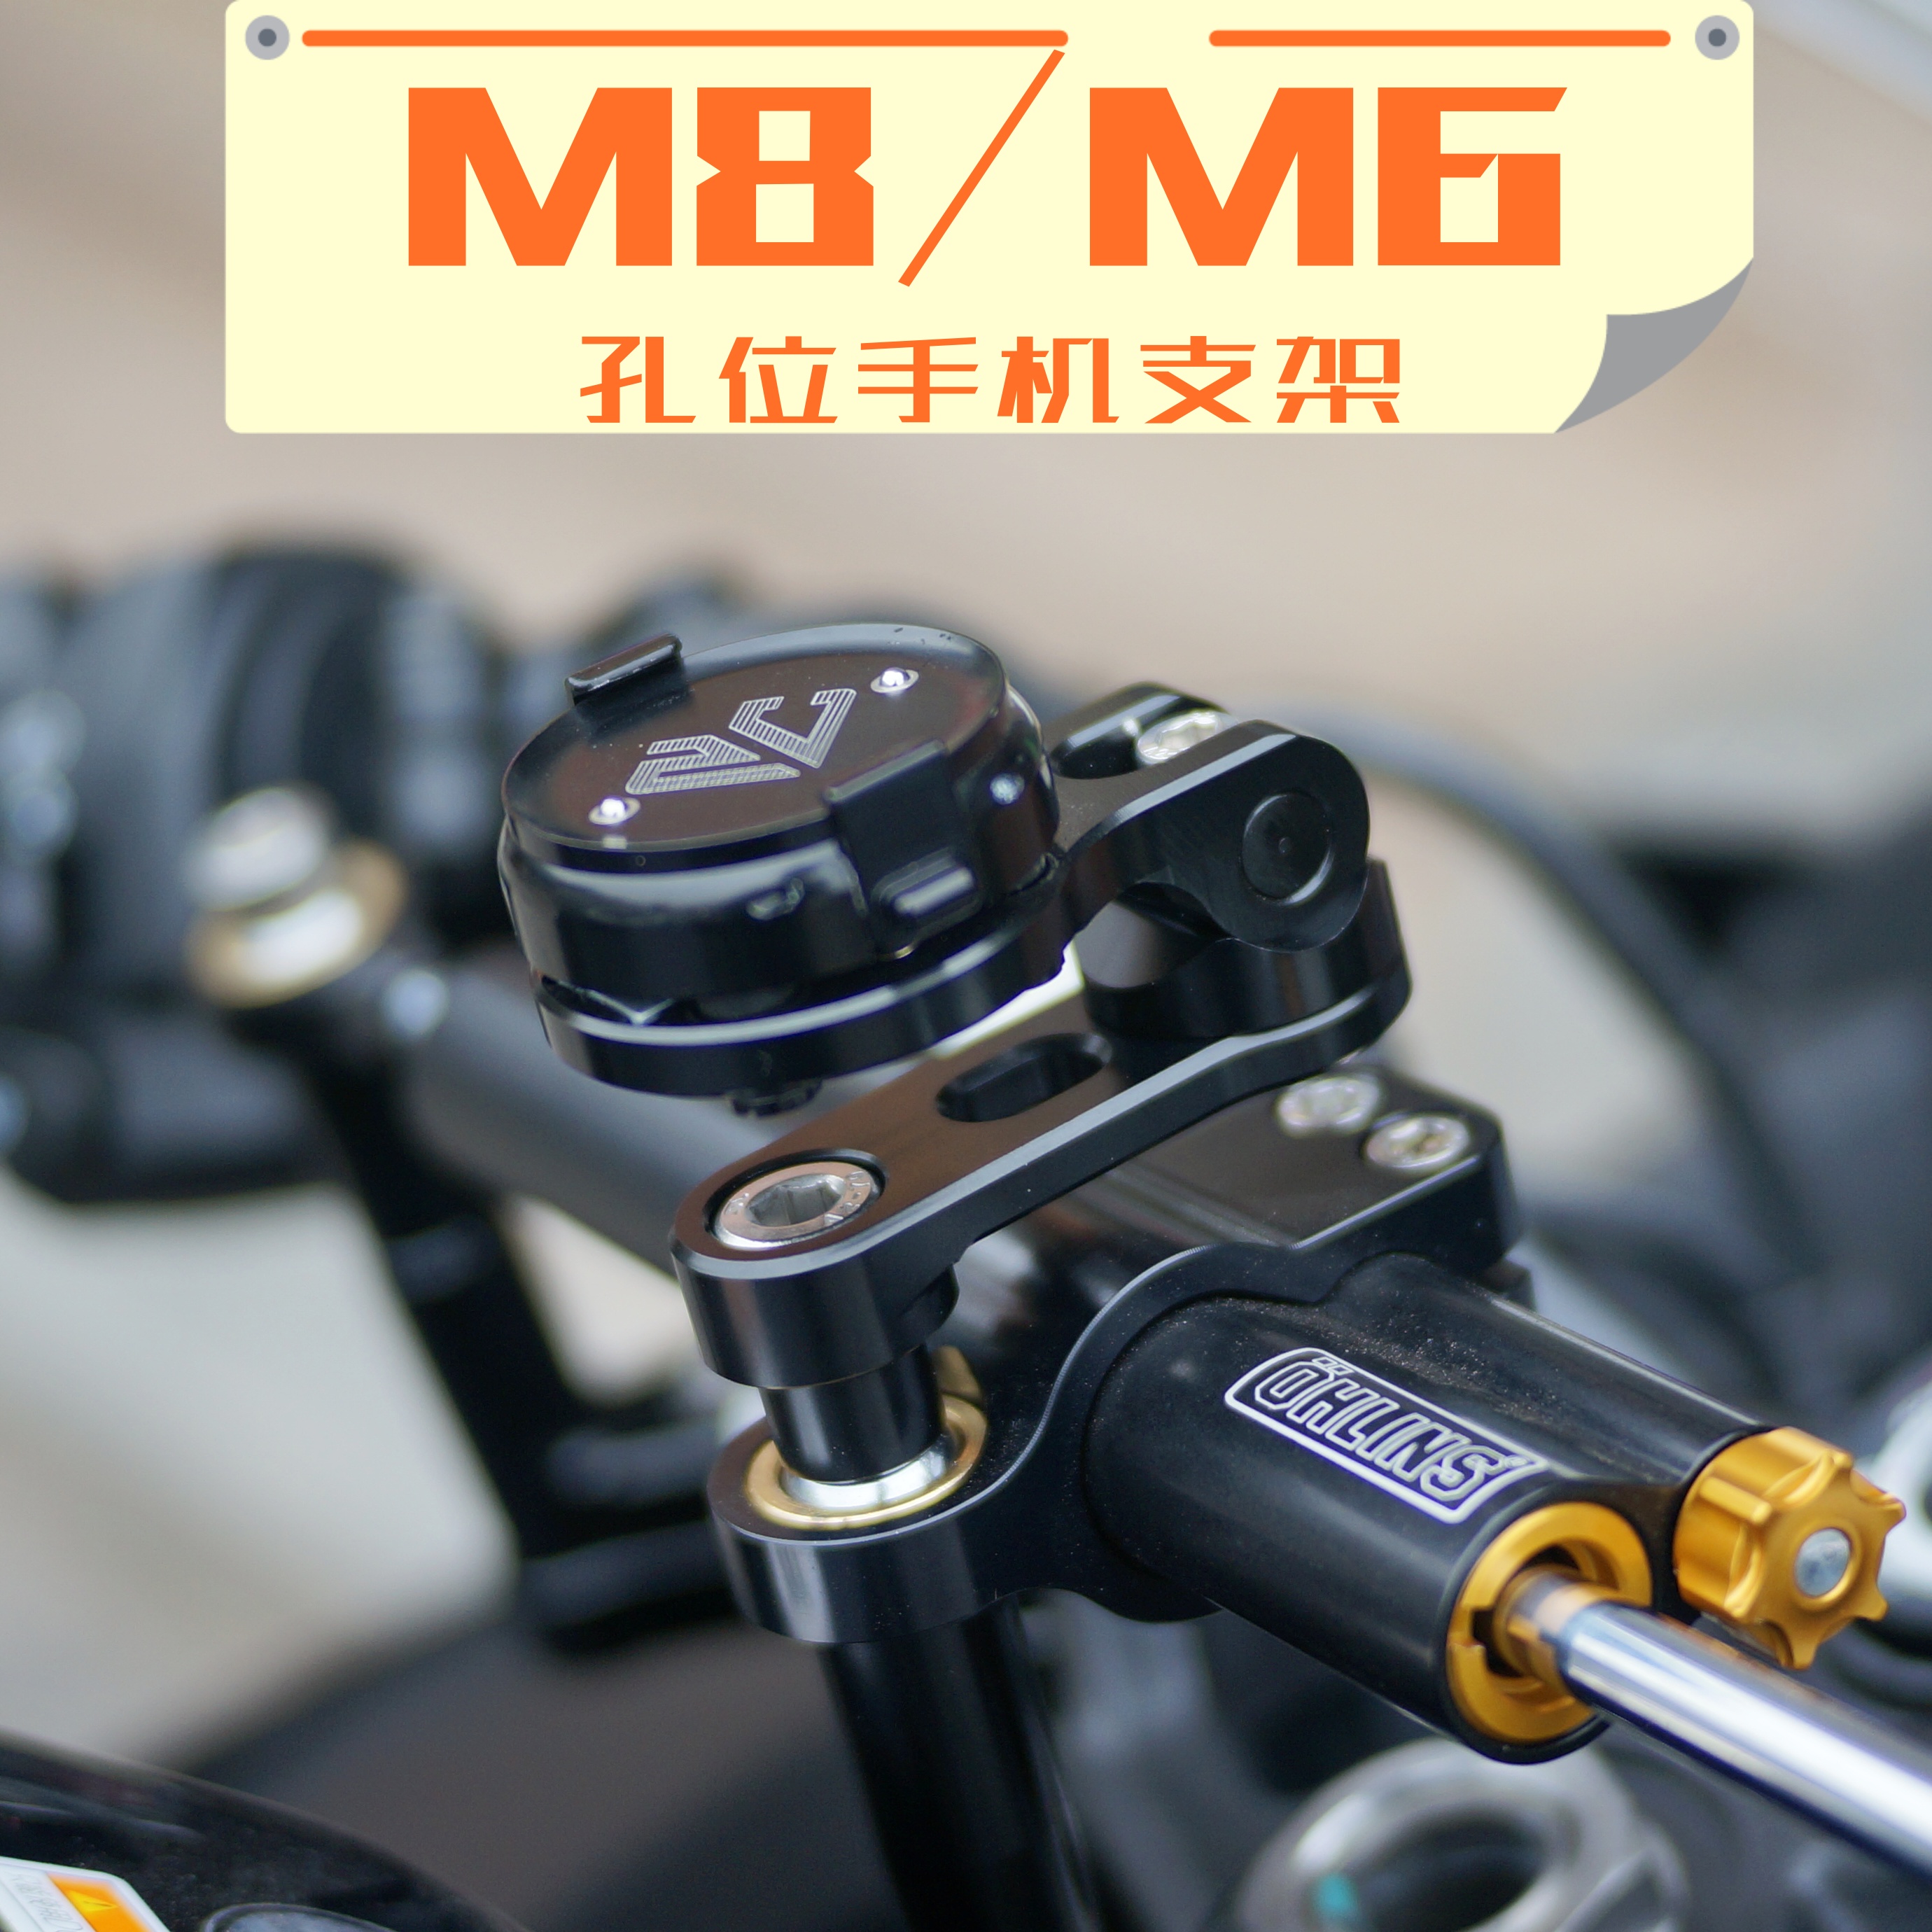 机车摩托车m8磁吸m6钛尺后视镜螺丝底座手机支架手机座防抖减震zc